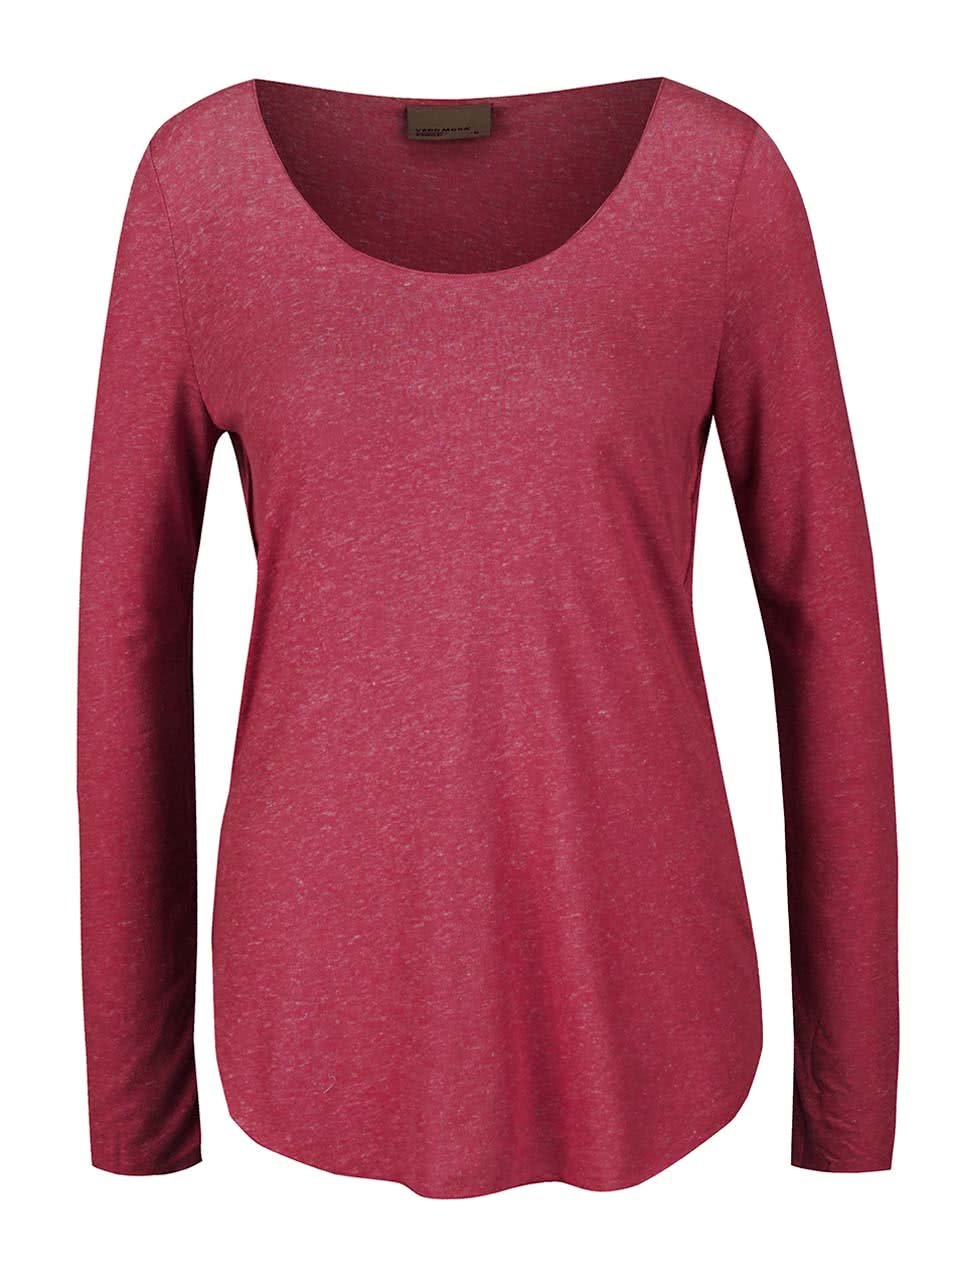 Tmavě růžové tričko s dlouhými rukávy Vero Moda Lua